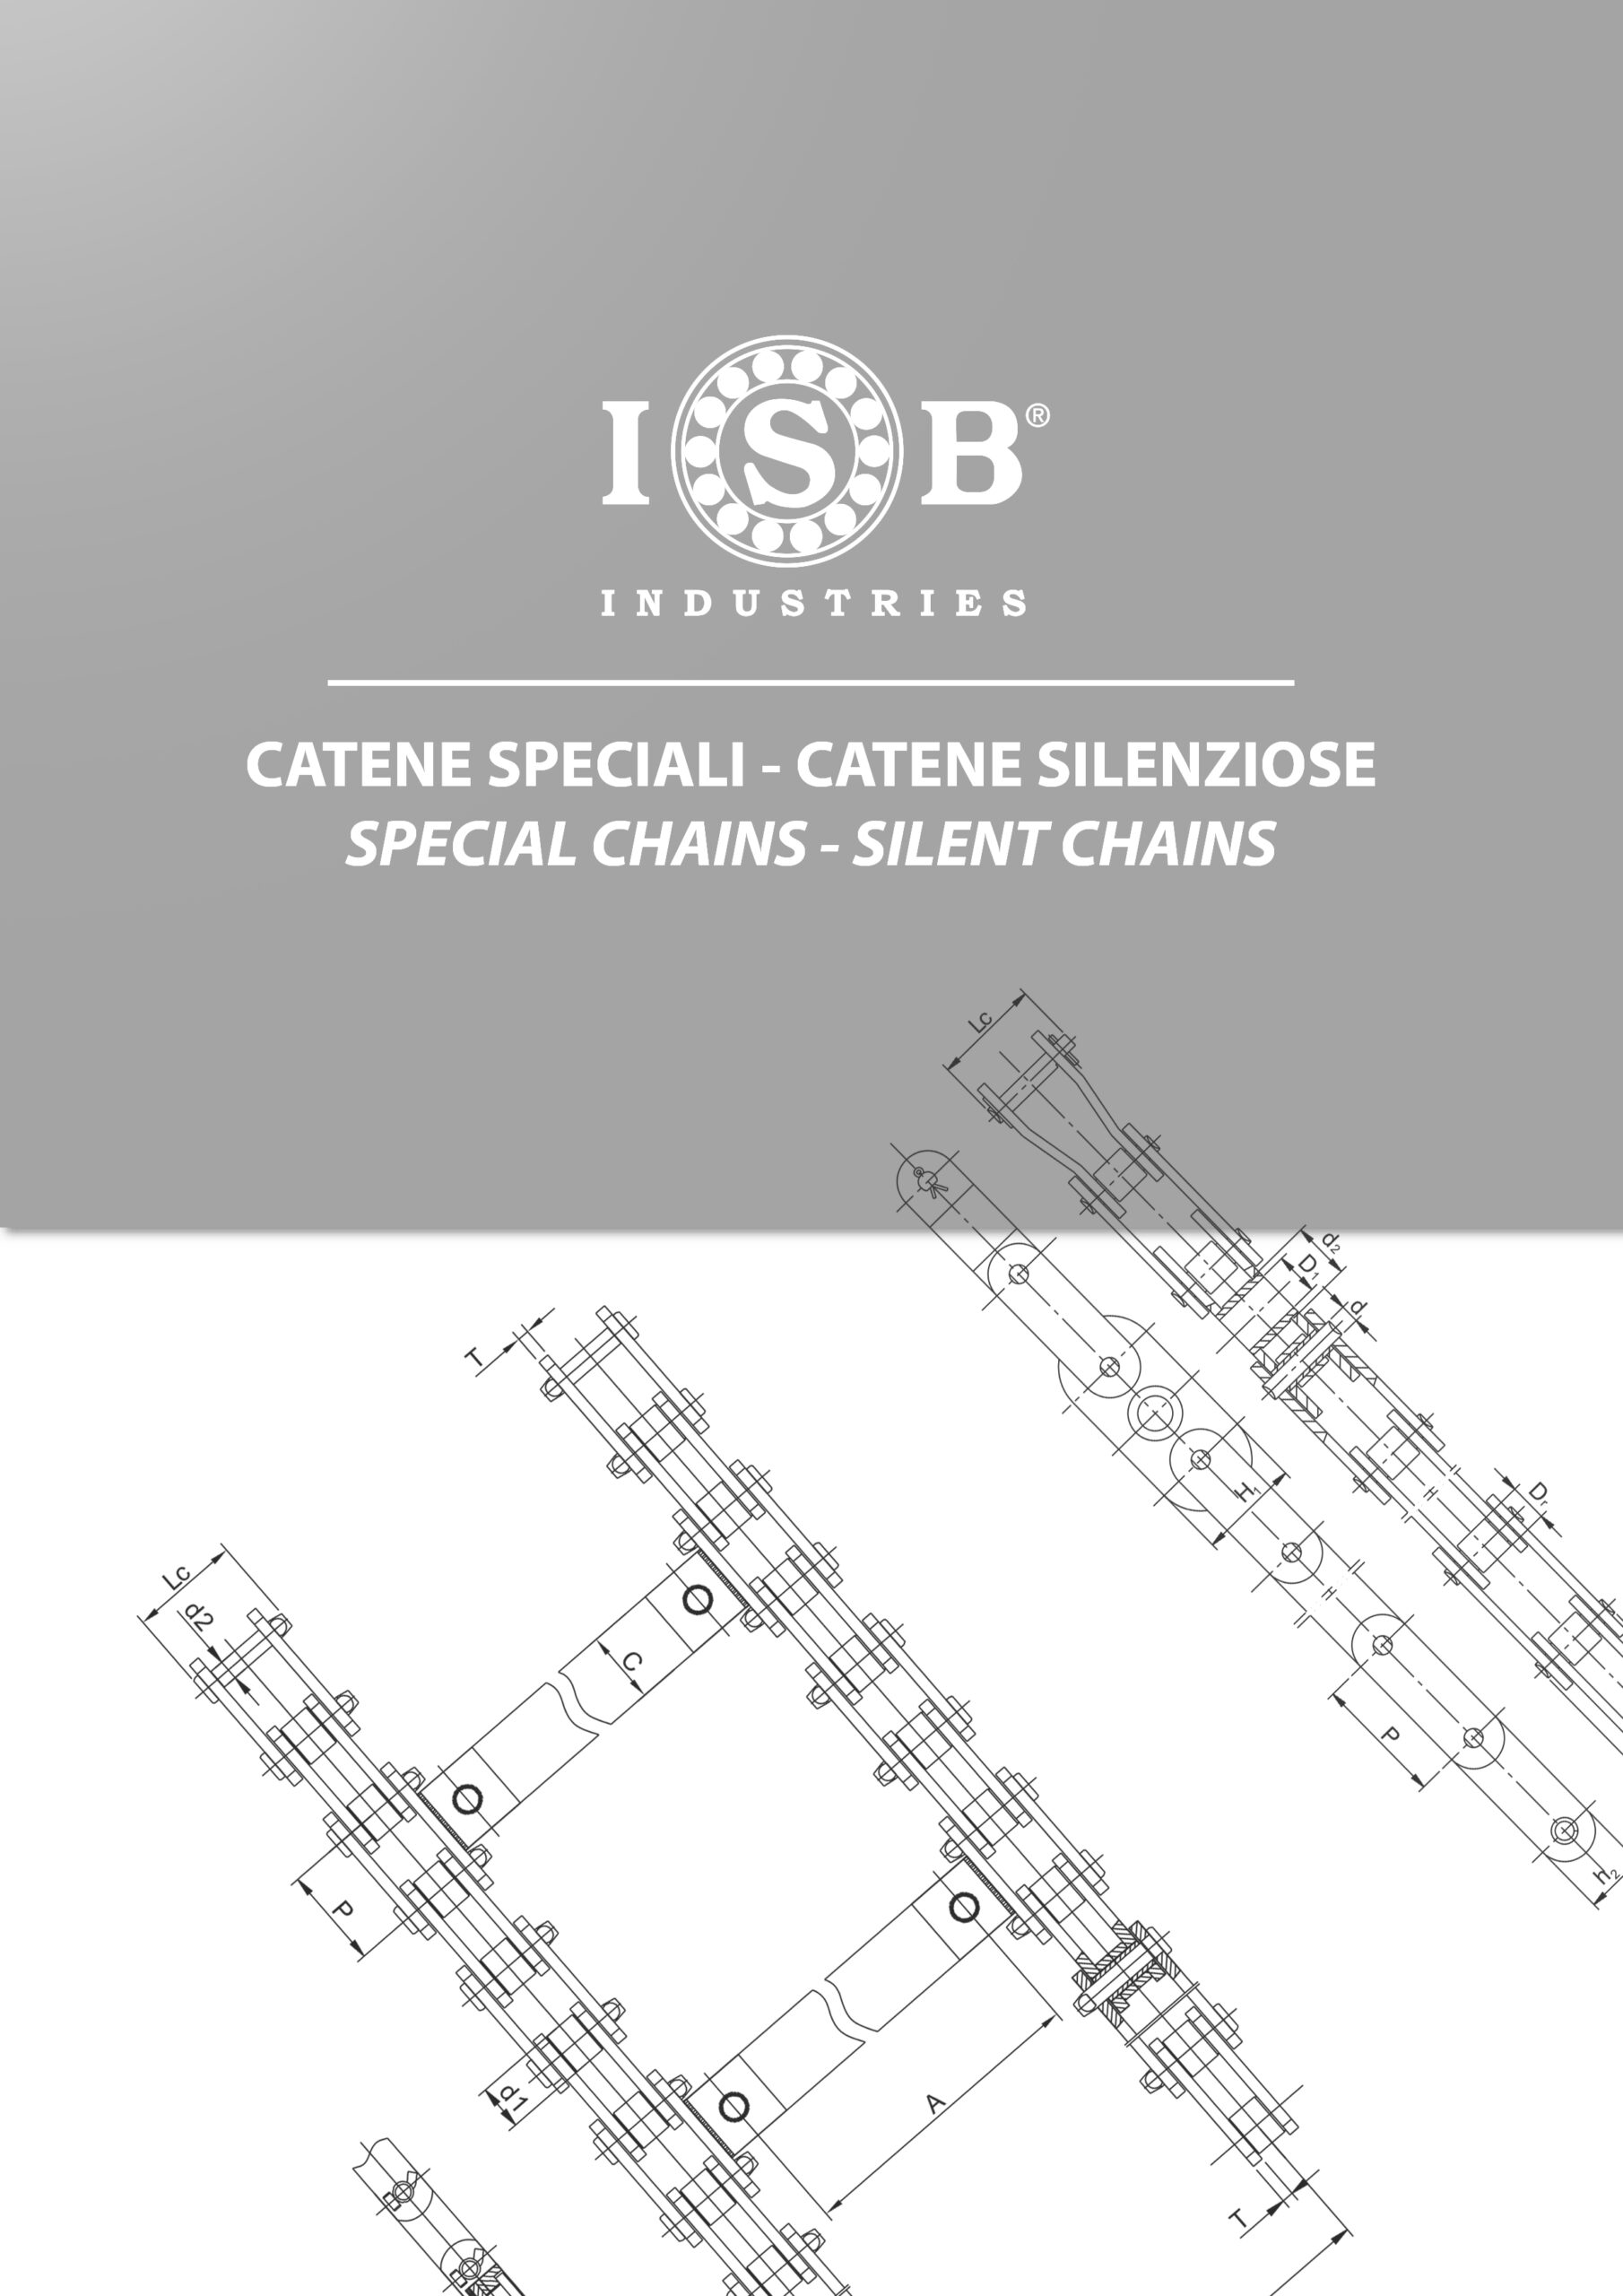 Cadenas-especiales-ISB-scaled.jpg